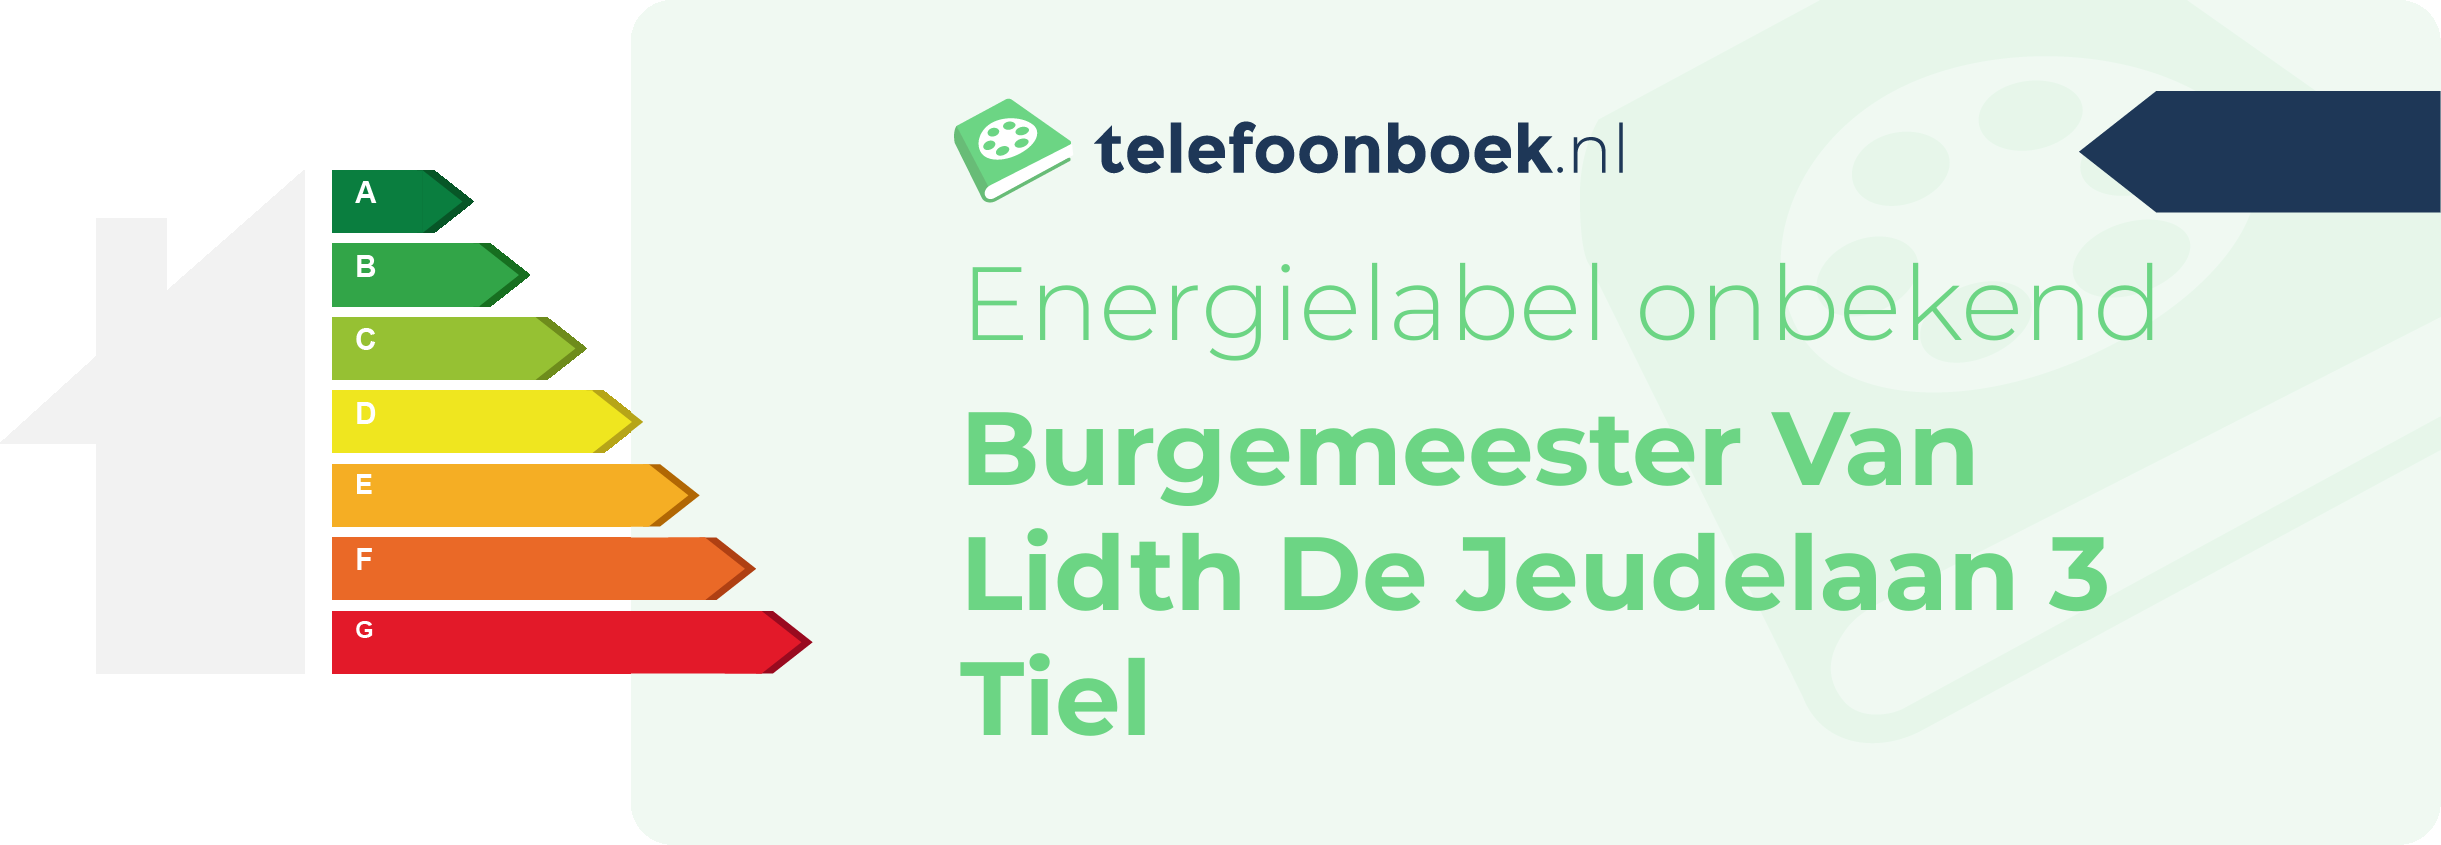 Energielabel Burgemeester Van Lidth De Jeudelaan 3 Tiel